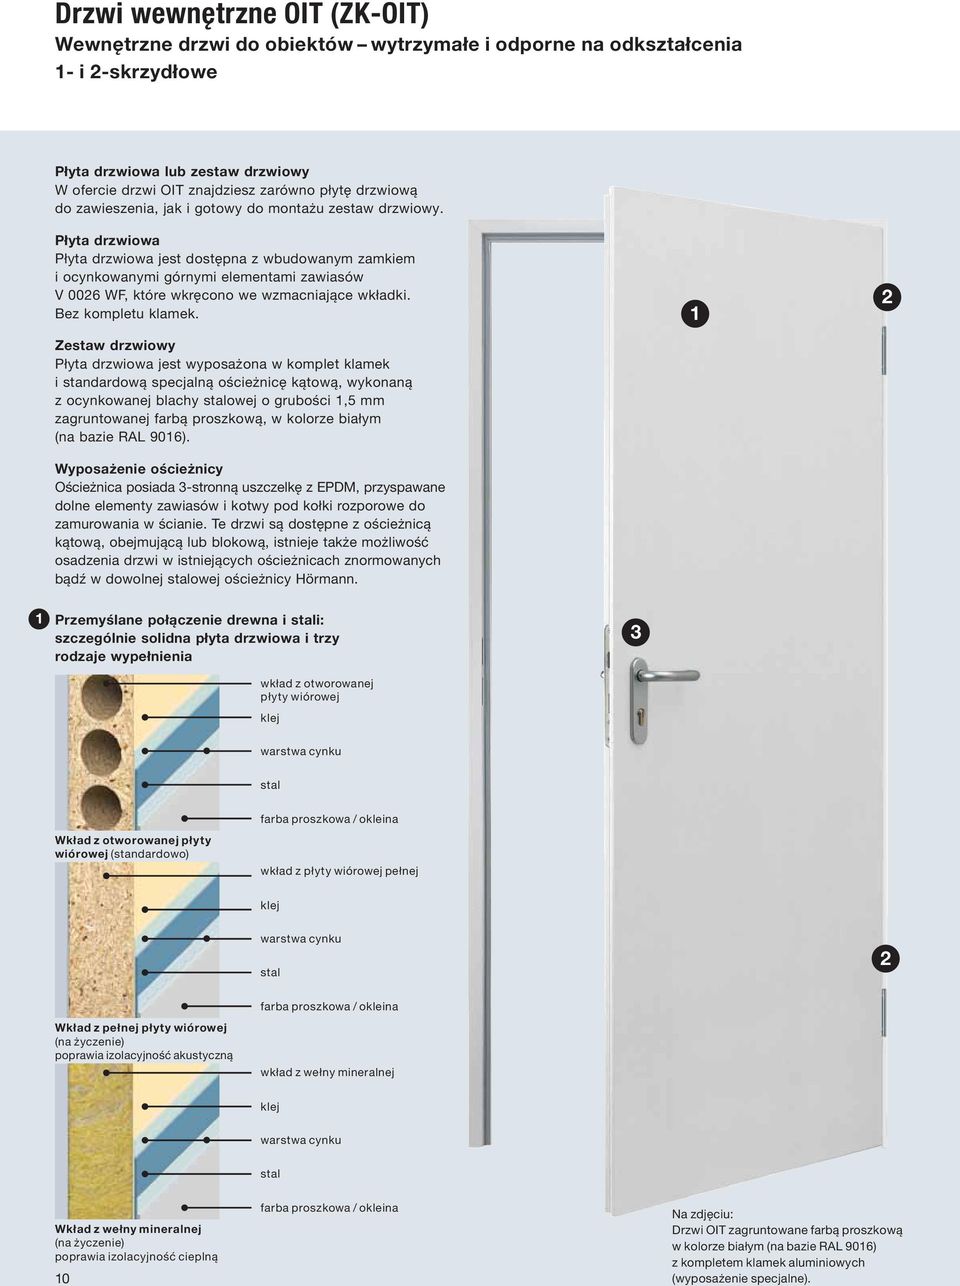 Płyta drzwiowa Płyta drzwiowa jest dostępna z wbudowanym zamkiem i ocynkowanymi górnymi elementami zawiasów V 0026 WF, które wkręcono we wzmacniające wkładki. Bez kompletu klamek.